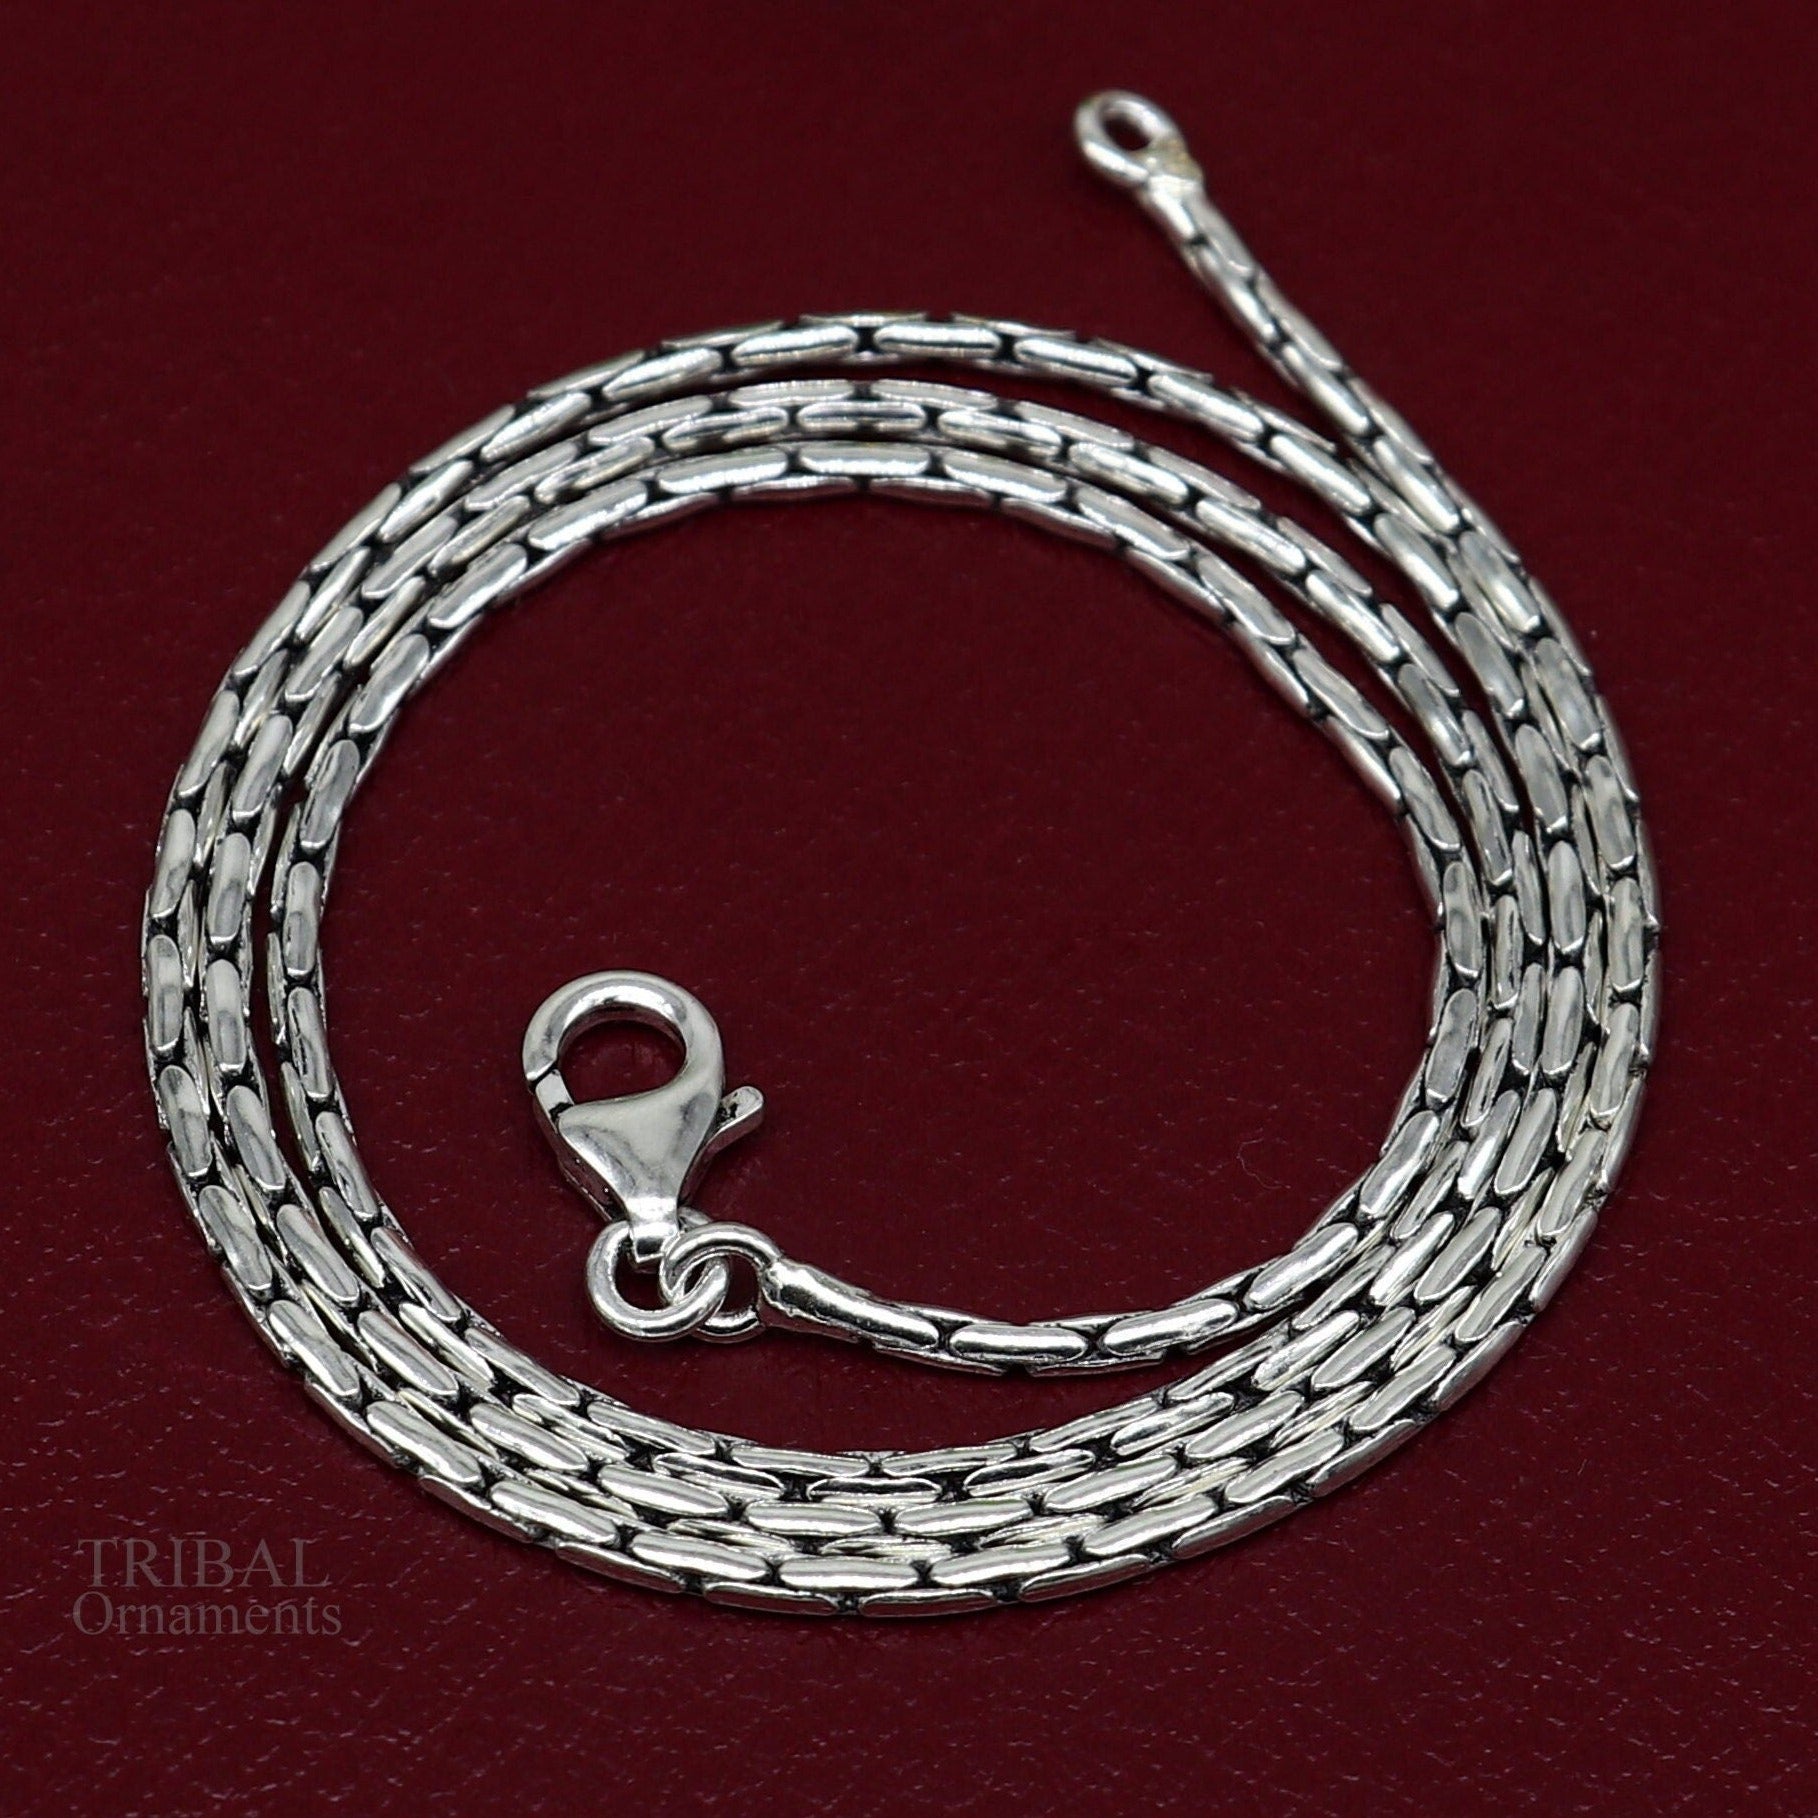 Silver chain Necklace,silver chain Necklace,silver link Necklace,chunky  necklace,rope chain necklace,grunge necklace,mens necklace